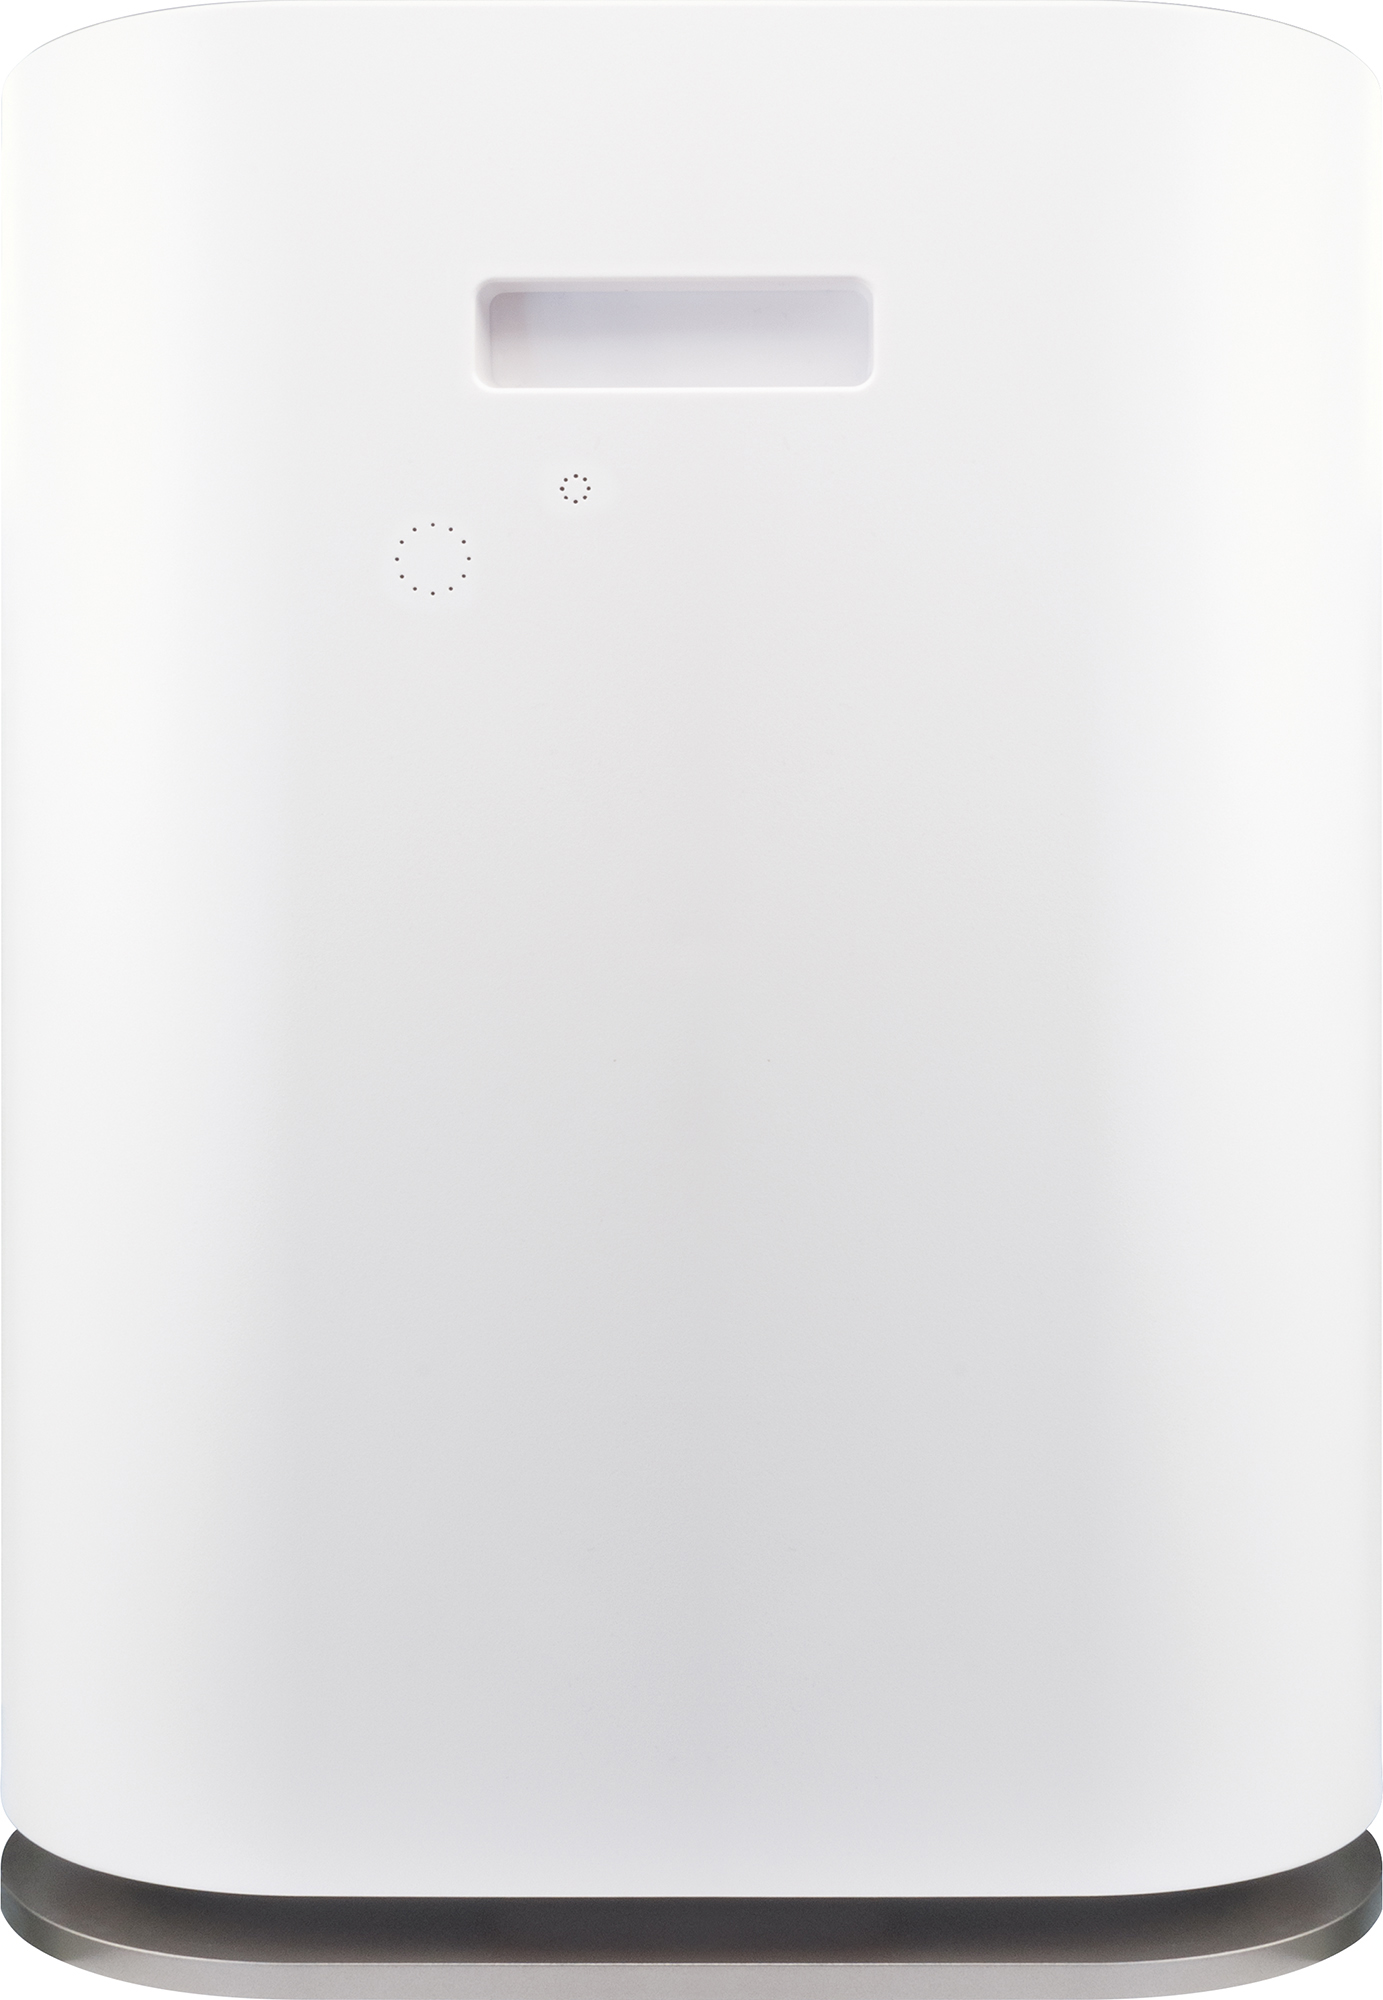 SCHWAIGER -658019- Luftreiniger Watt) Weiß (60